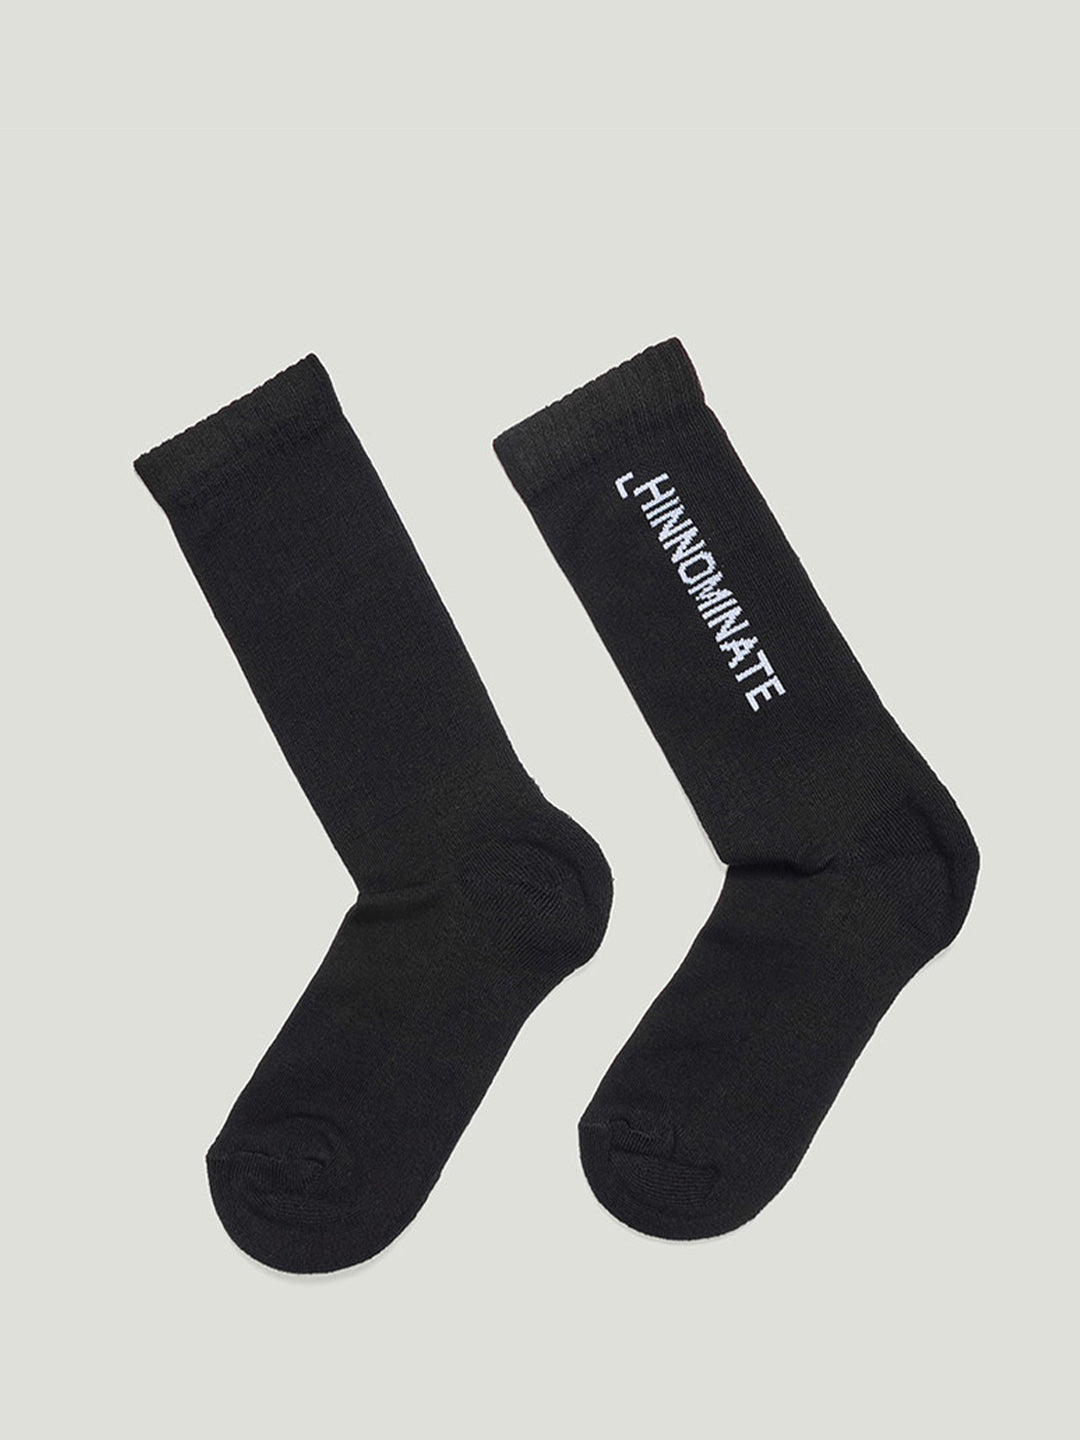 Hinnominate calzini nero con stampa